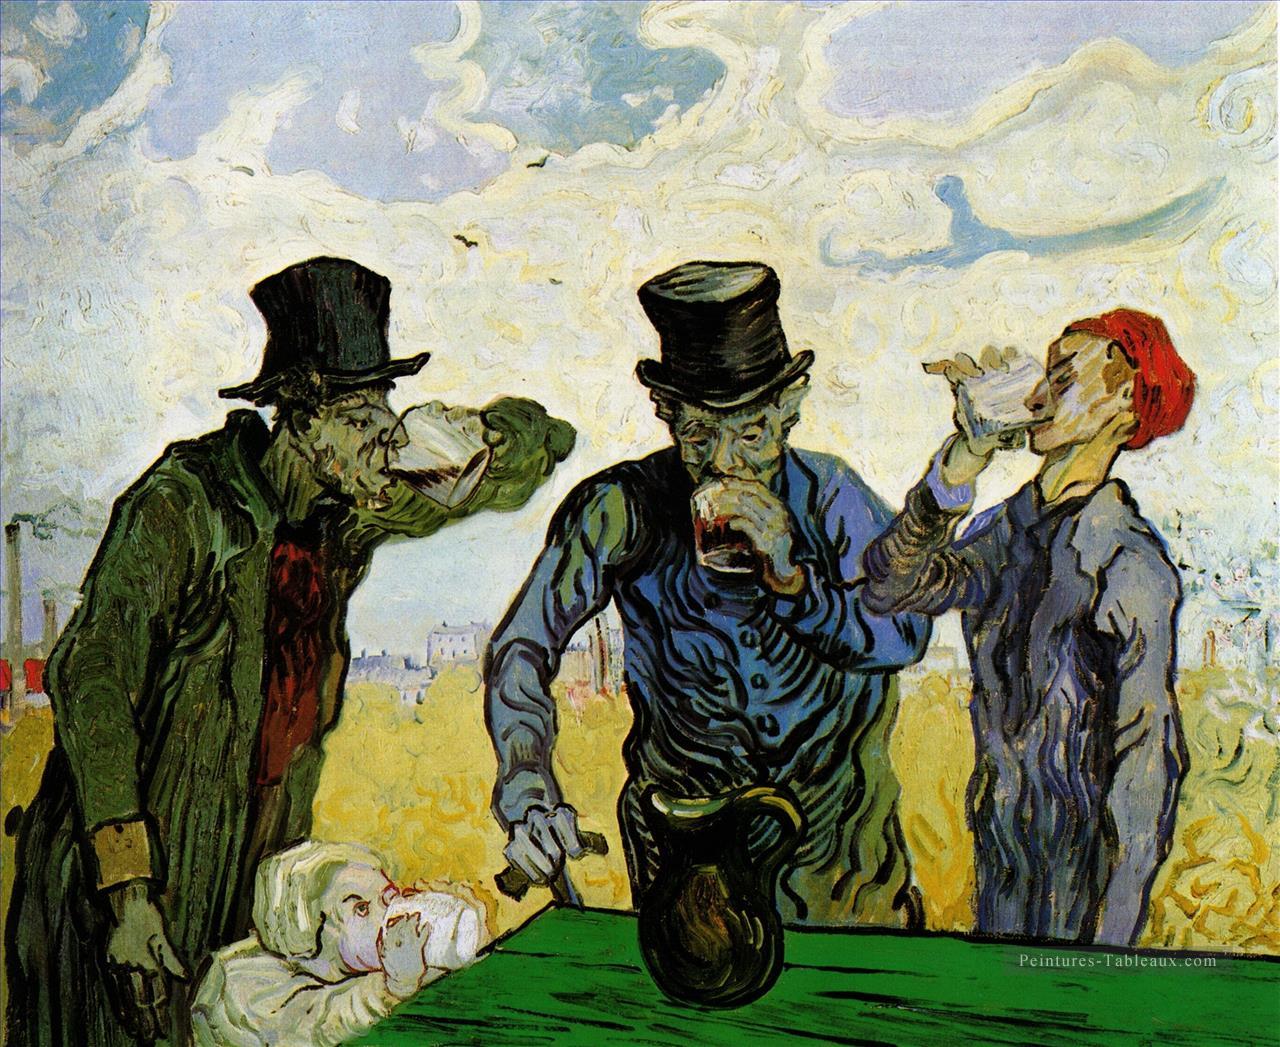 Les buveurs après Daumier Vincent van Gogh Peintures à l'huile